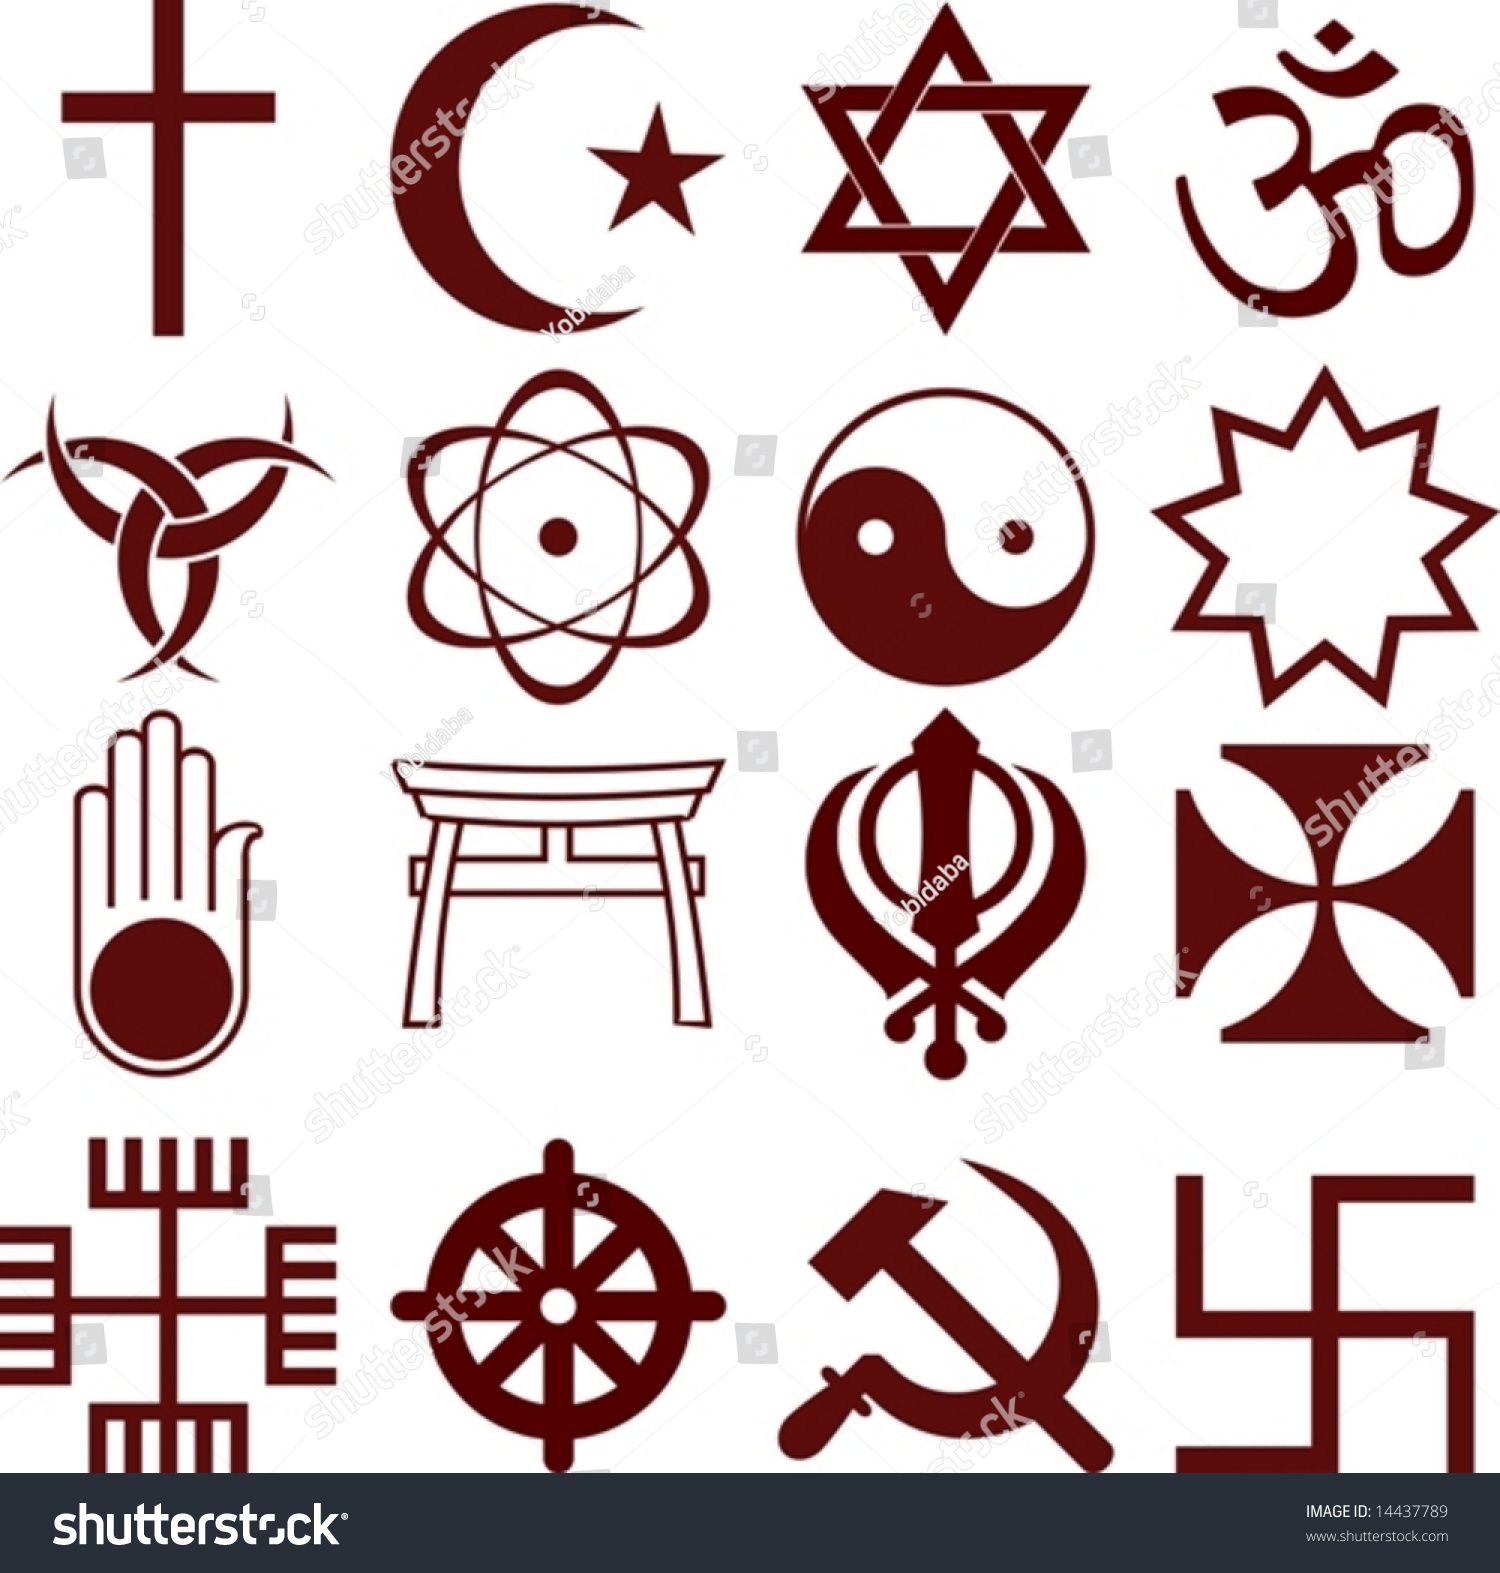 Examples Of Religious Symbols